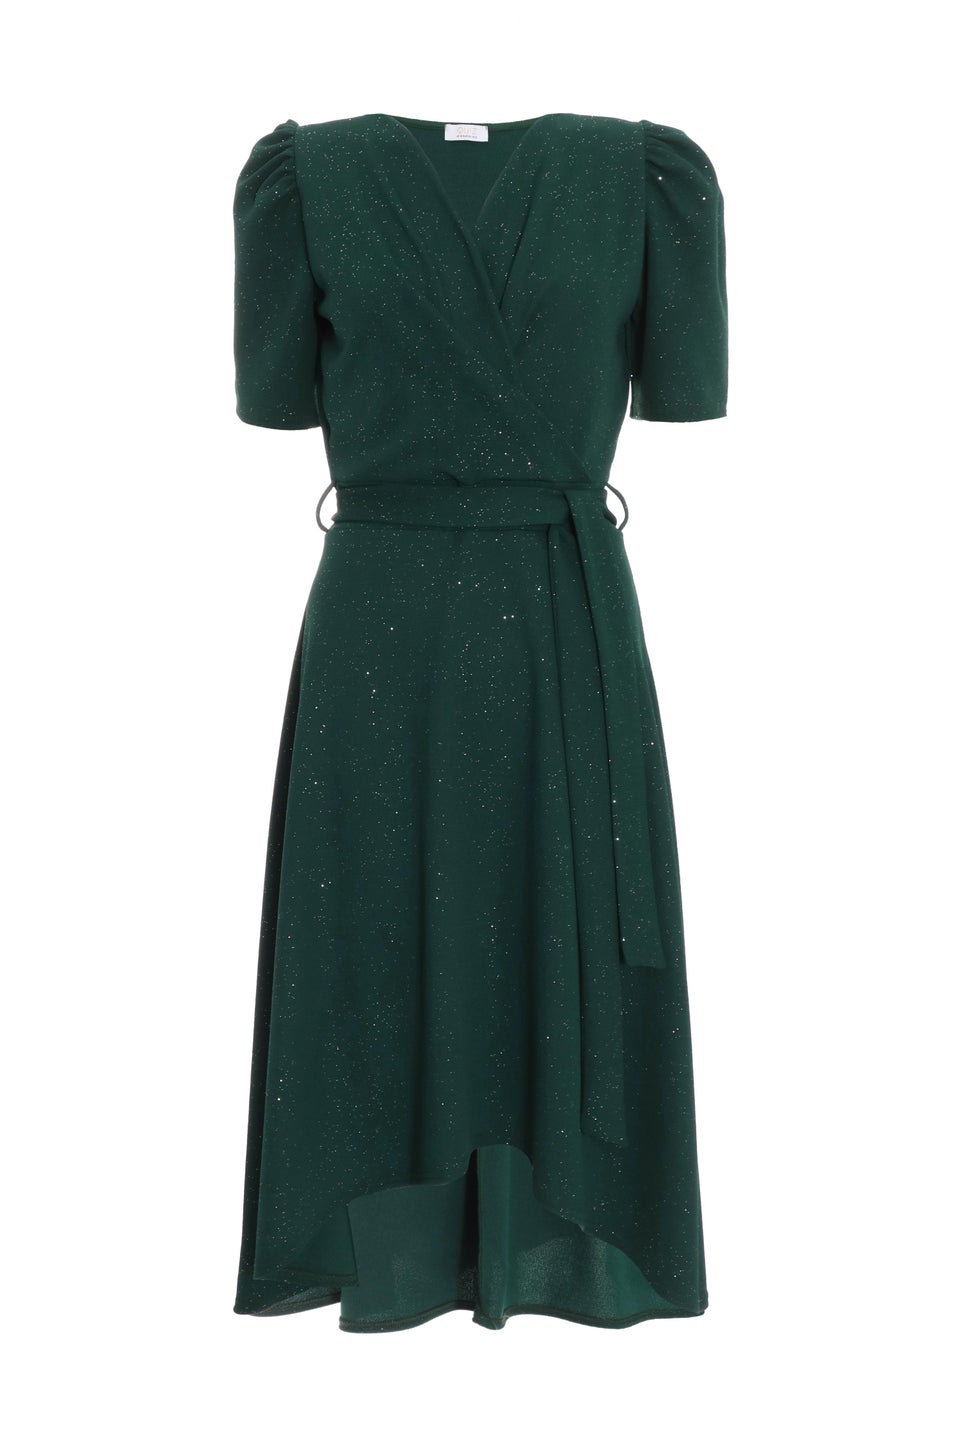 Quiz Green Glitter Dip Hem Midi Dress - Matalan